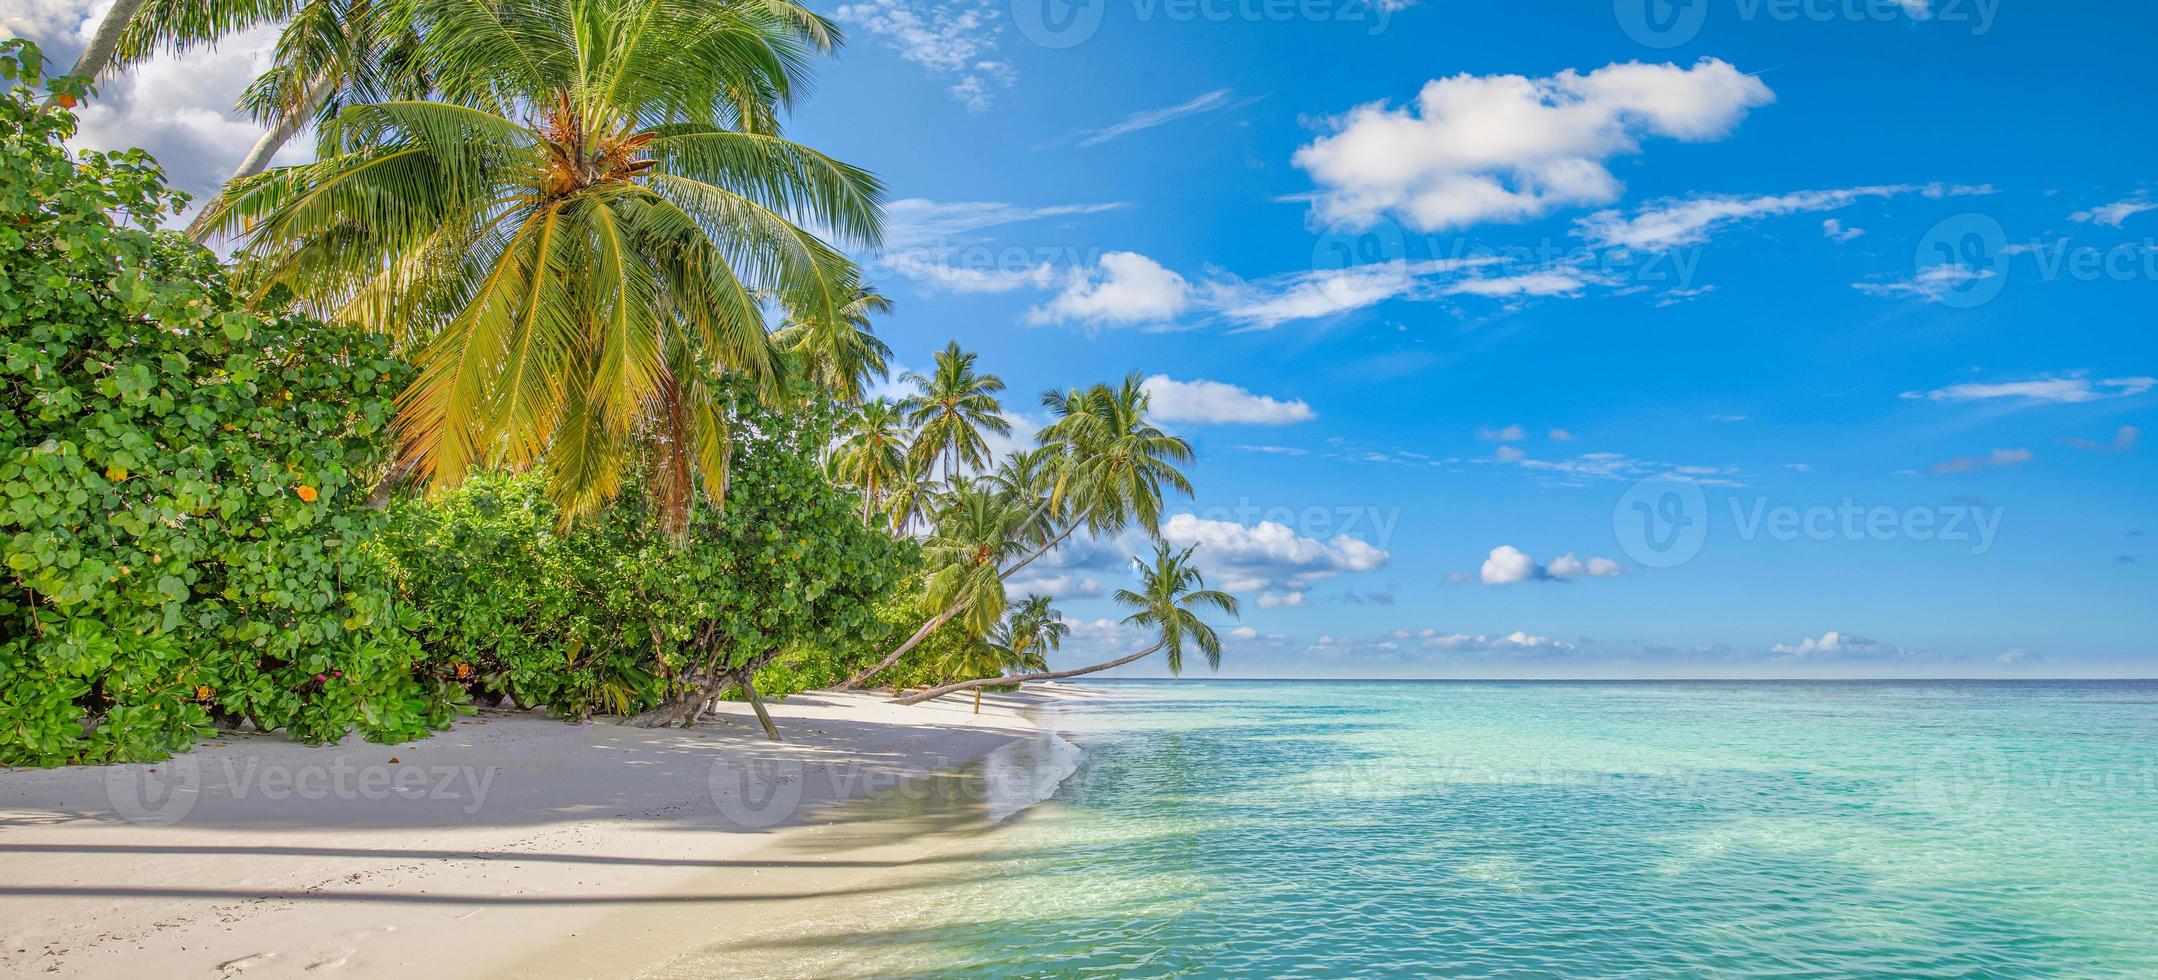 antecedentes de viajes de verano. exótica isla de playa tropical, costa paradisíaca. palmeras arena blanca, increíble cielo océano laguna. fantástico panorama natural hermoso, día soleado idílicas vacaciones inspiradoras foto